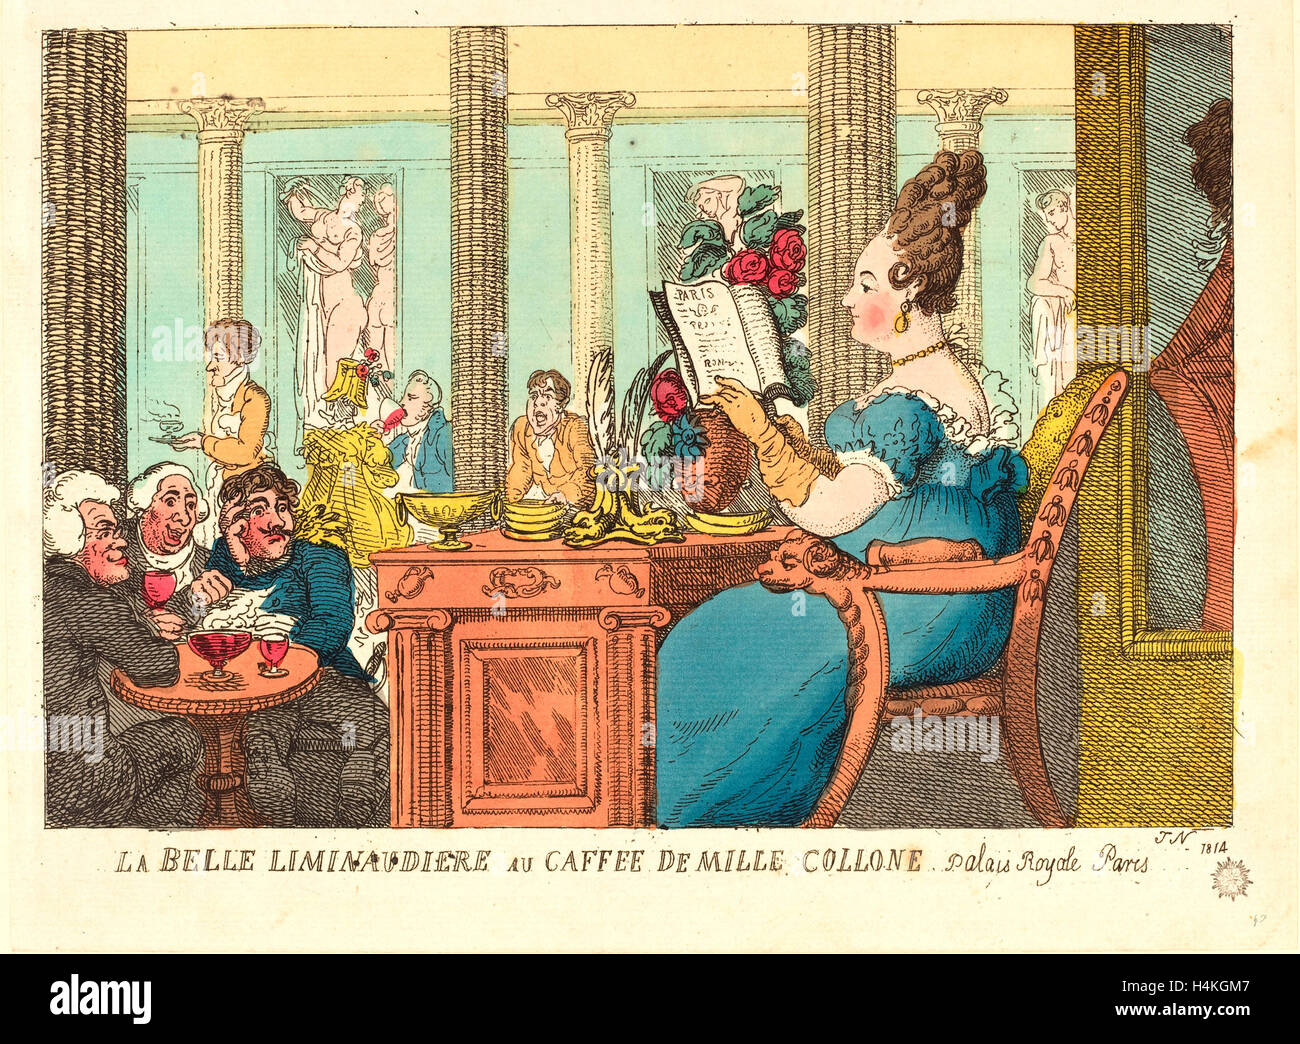 Thomas Rowlandson (British, 1756 - 1827 ), La Belle Limonaudiere au Cafe des Mille Colonnes, Palais Royal, Paris, 1814 Stock Photo